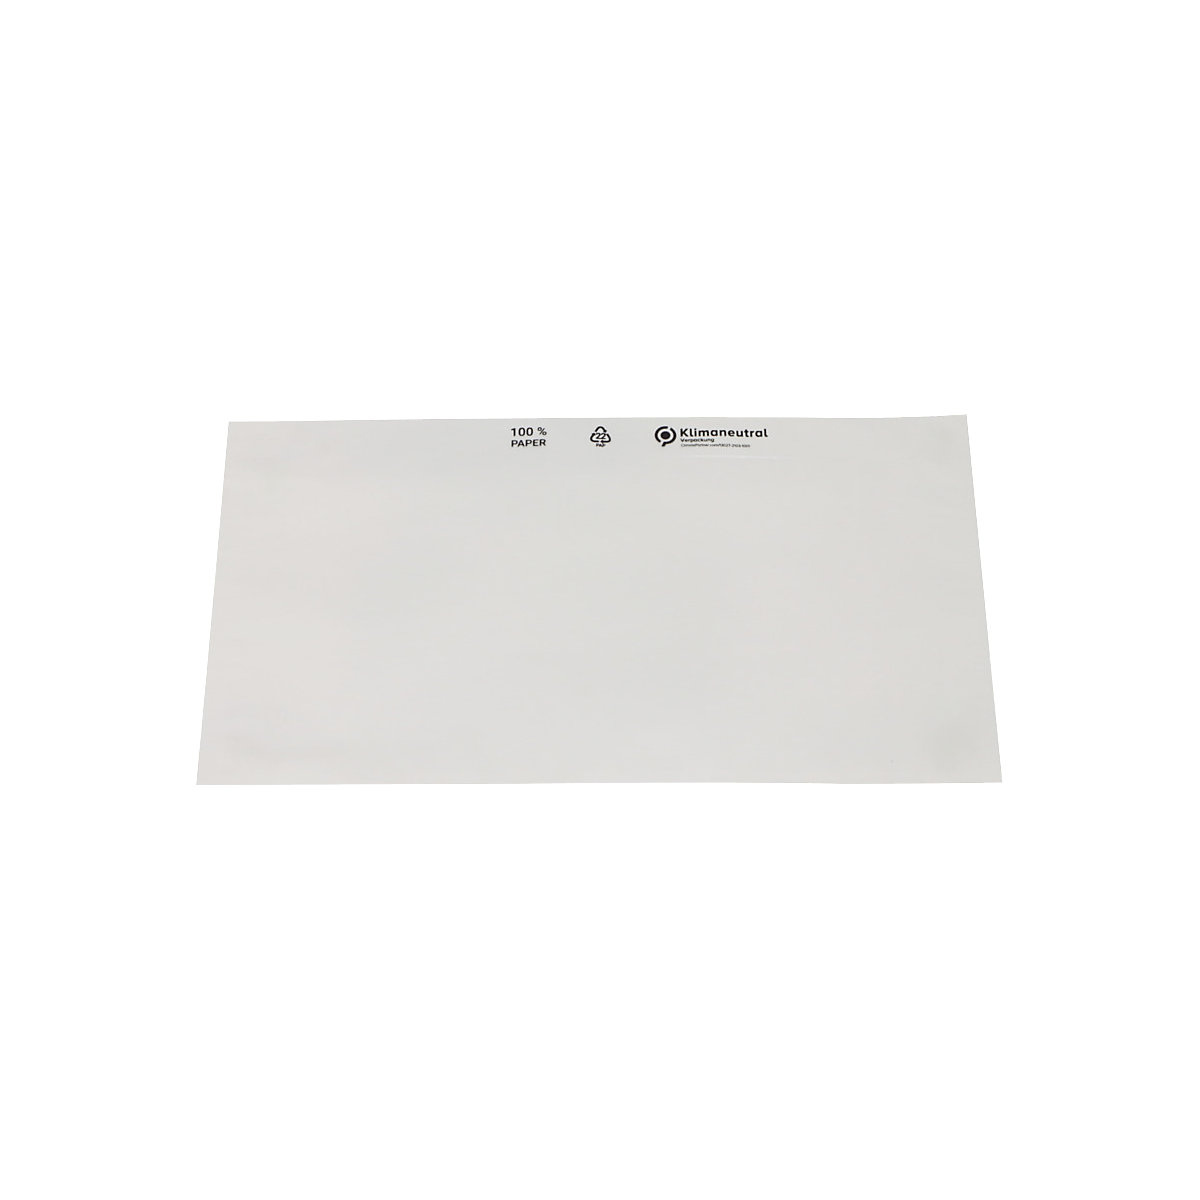 Dokumententaschen aus Papier terra, Transparent, VE 1000 Stk, LxB 240 x 131 mm-1